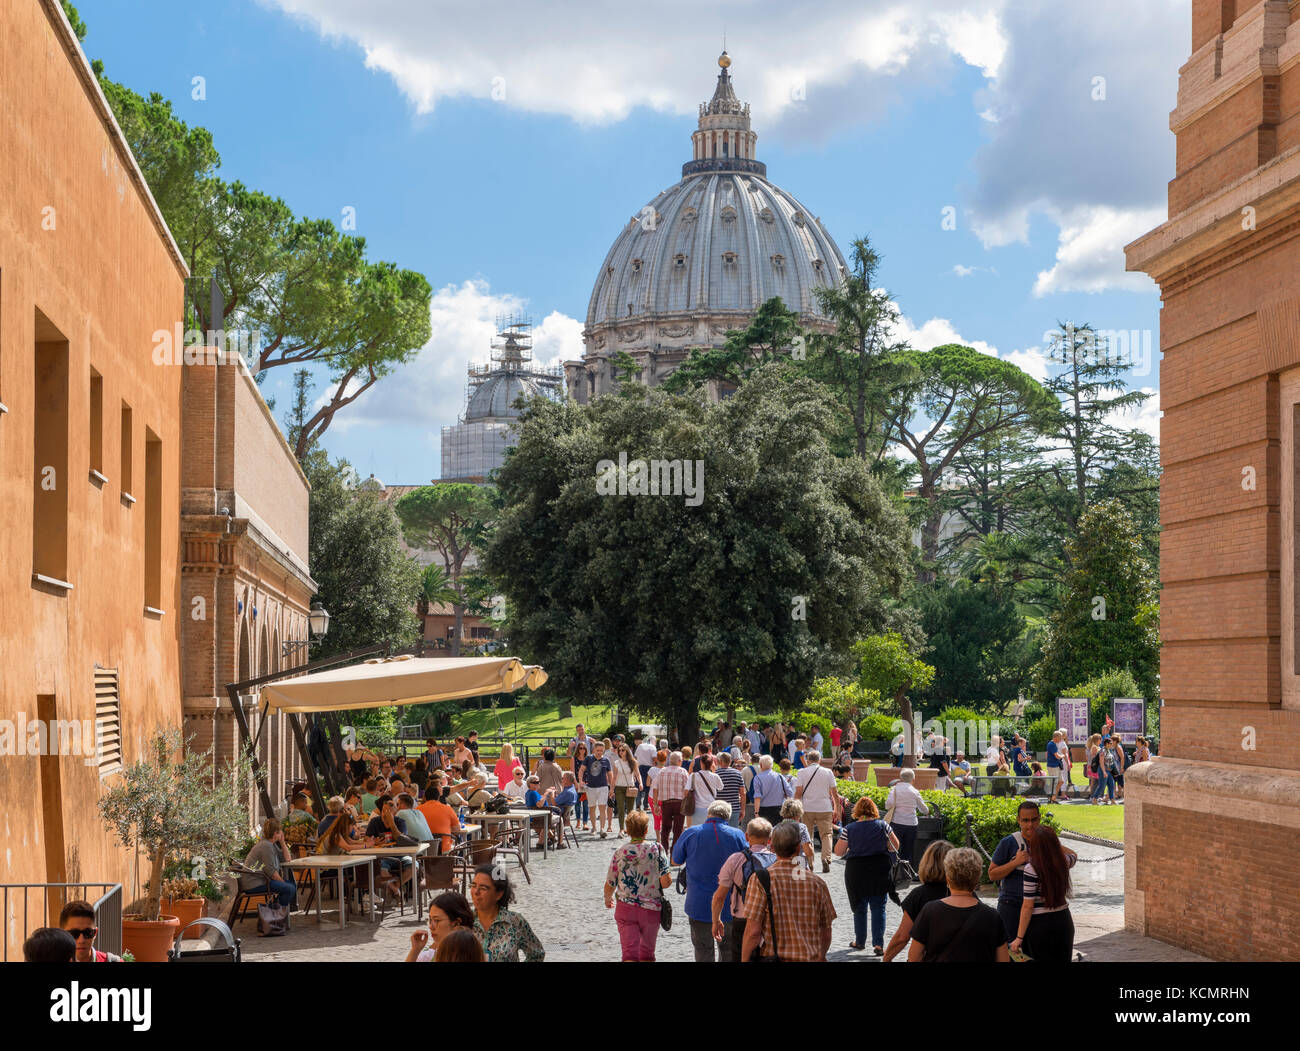 La cupola della Basilica di San Pietro dai giardini dei Musei Vaticani, Città del Vaticano, Roma, Italia Foto Stock